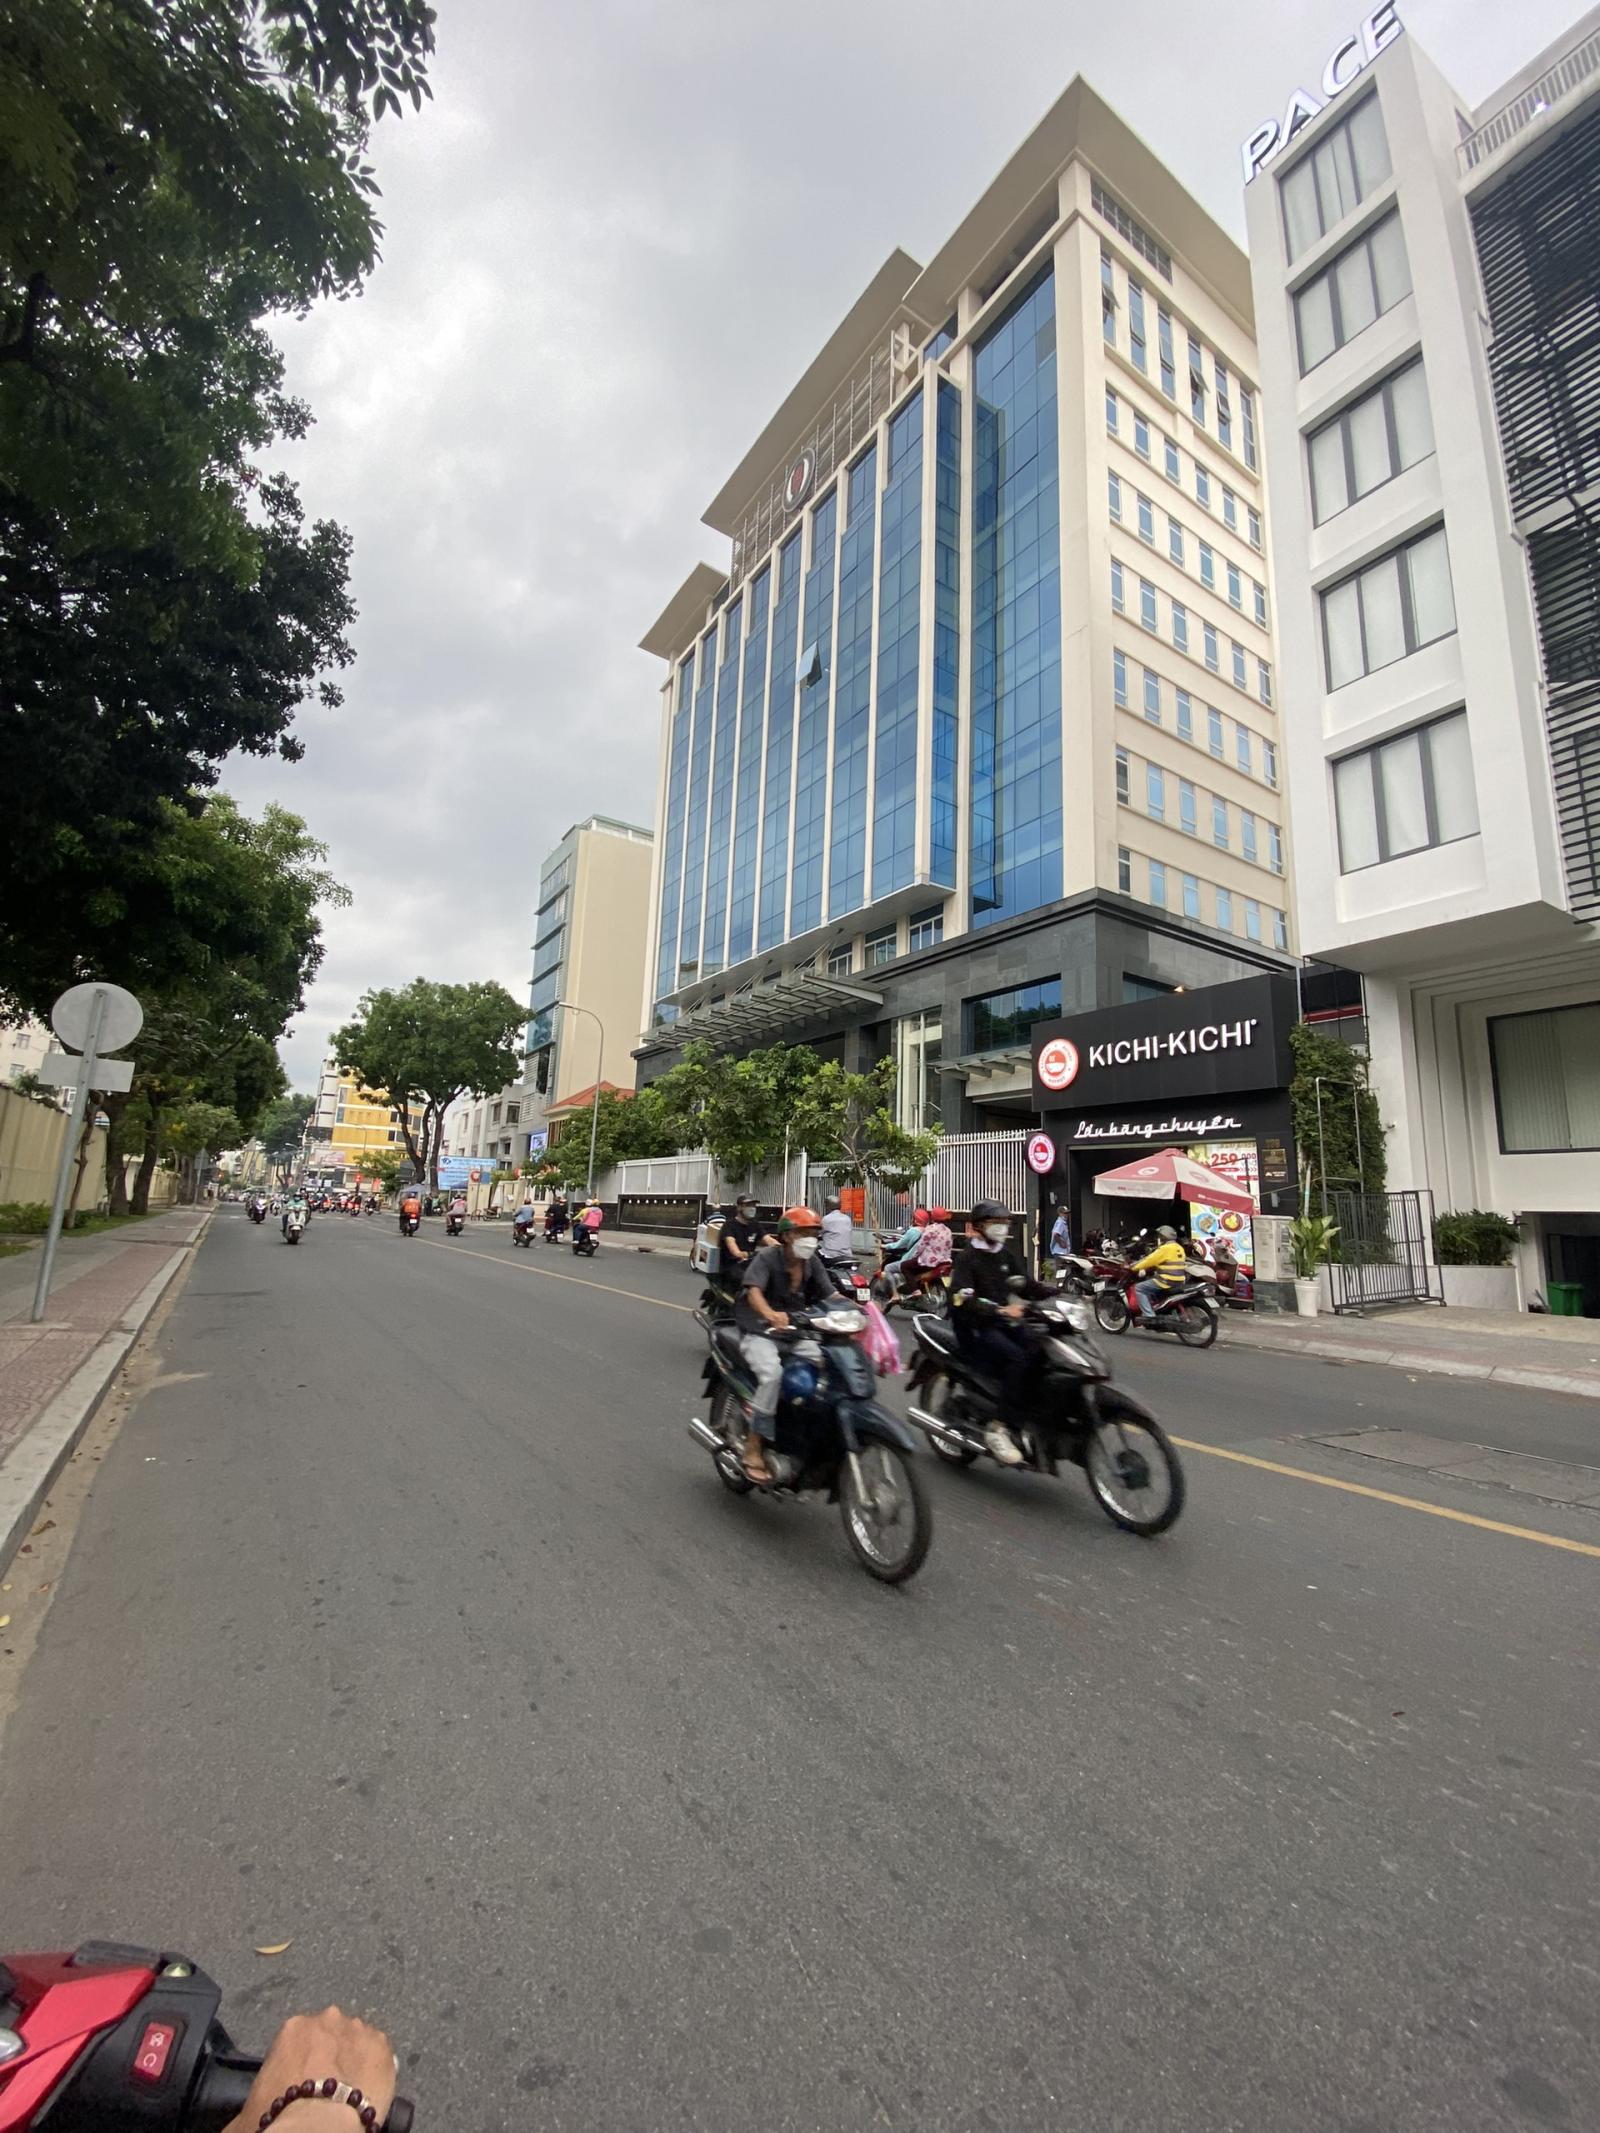 Bán gấp khách sạn 6 lầu MT Nguyễn Thái Học, Quận 1, DT: 4.2x19m, giá: 49 tỷ. LH:0938667774